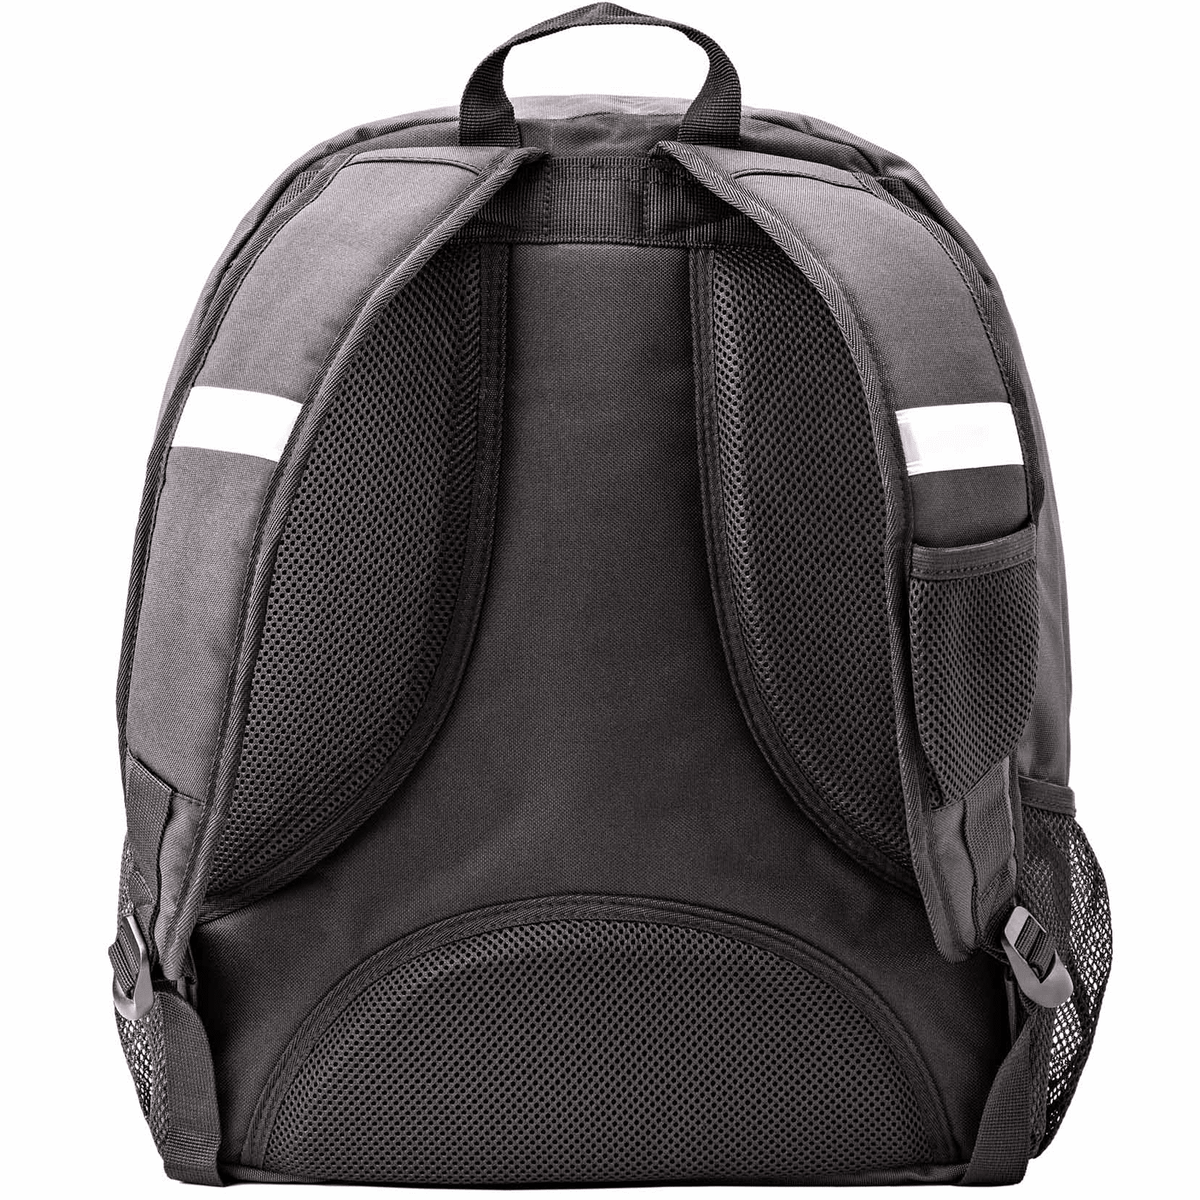 Student 2000 42L Backpack - Black